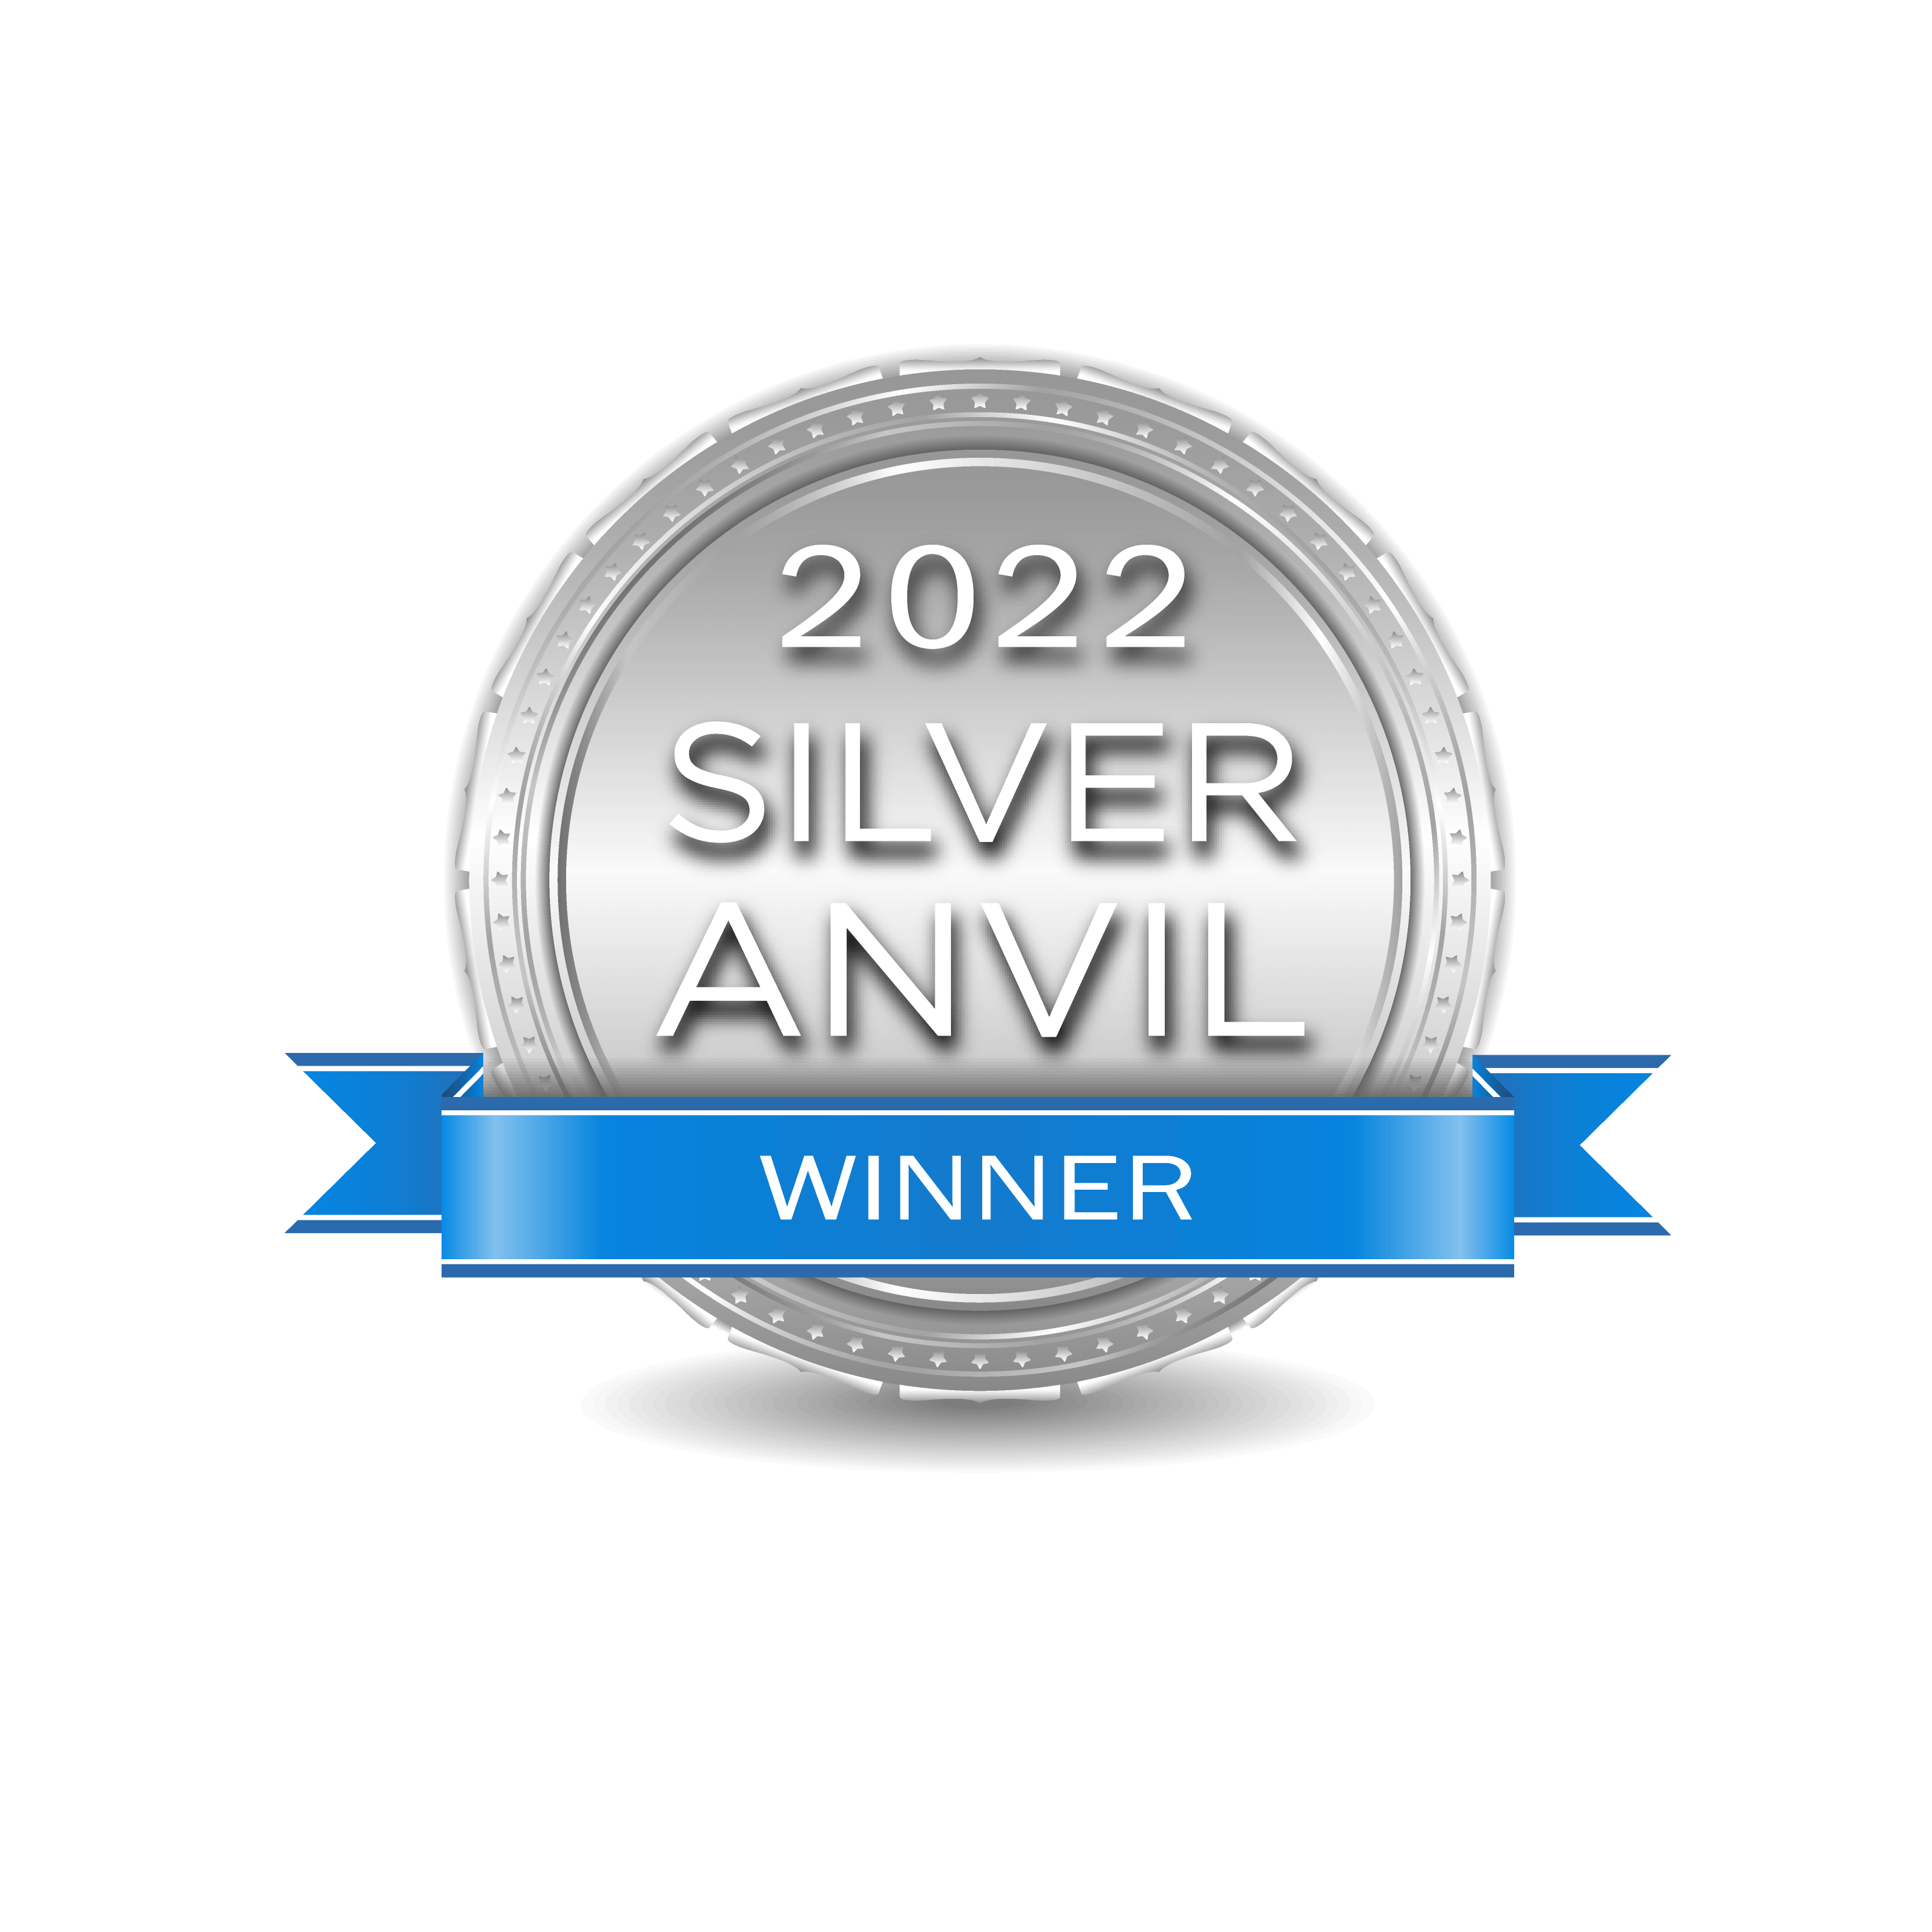 Silver Anvil winners logo 2022.